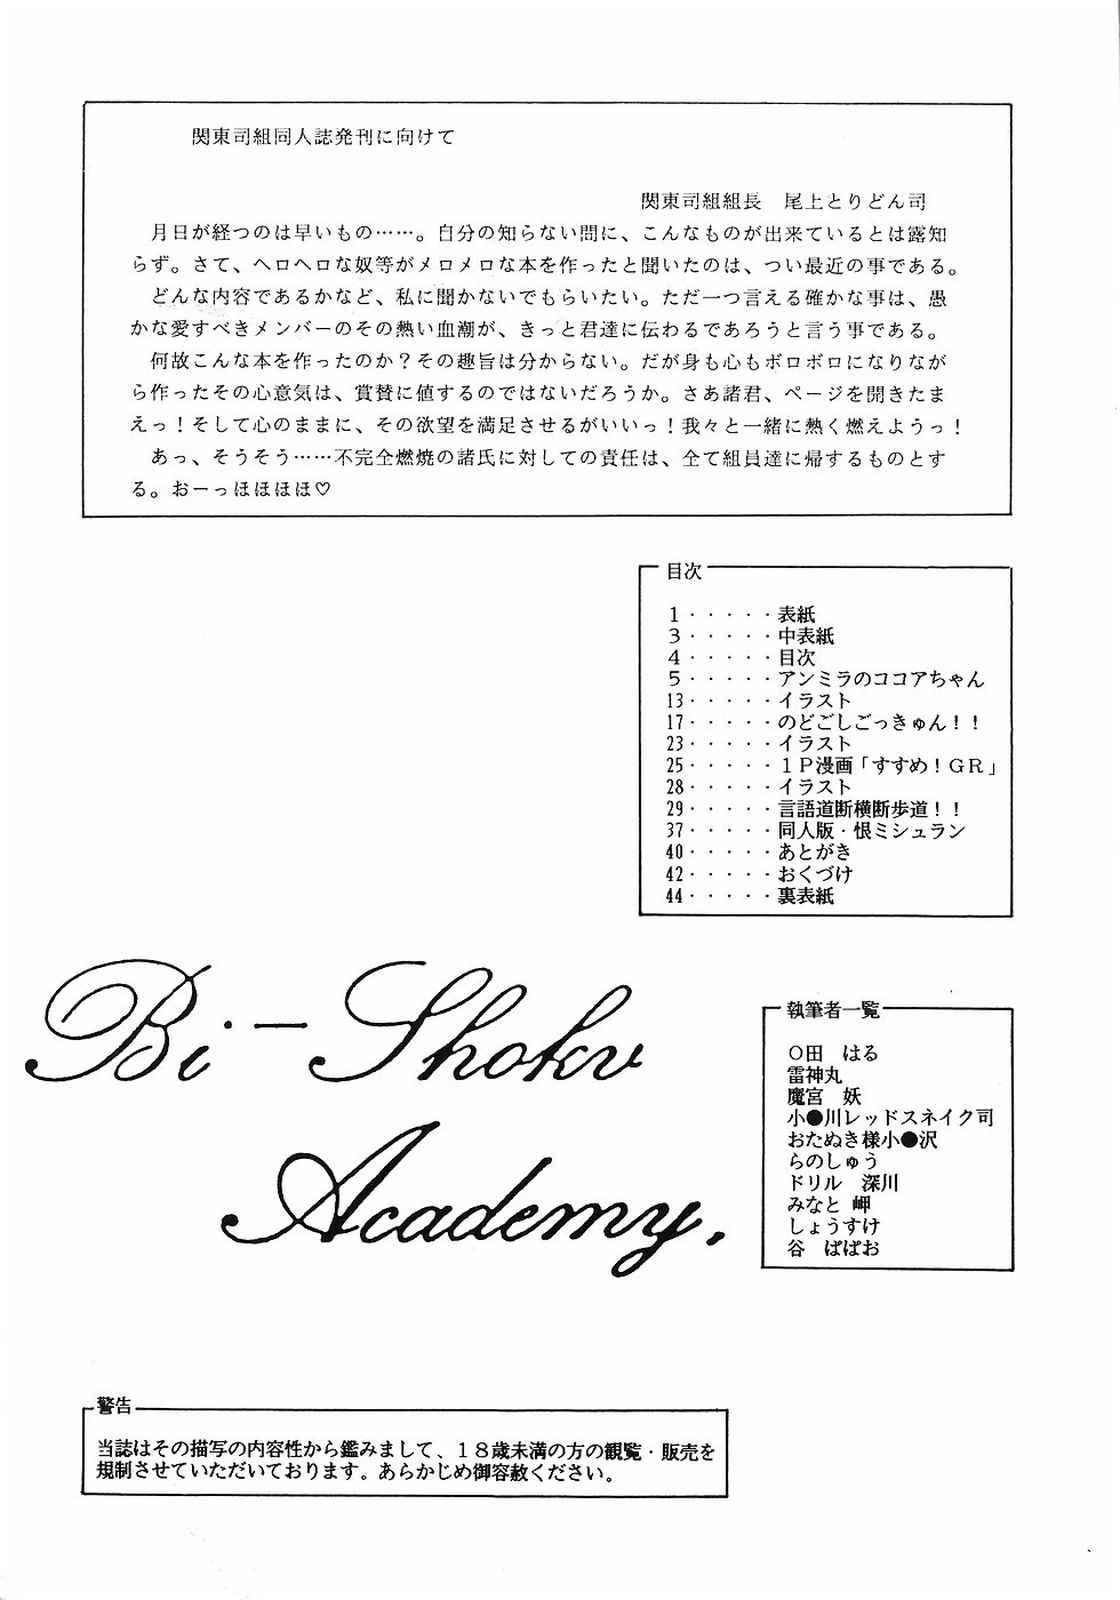 Bi-shoku Academy Vol.1 2